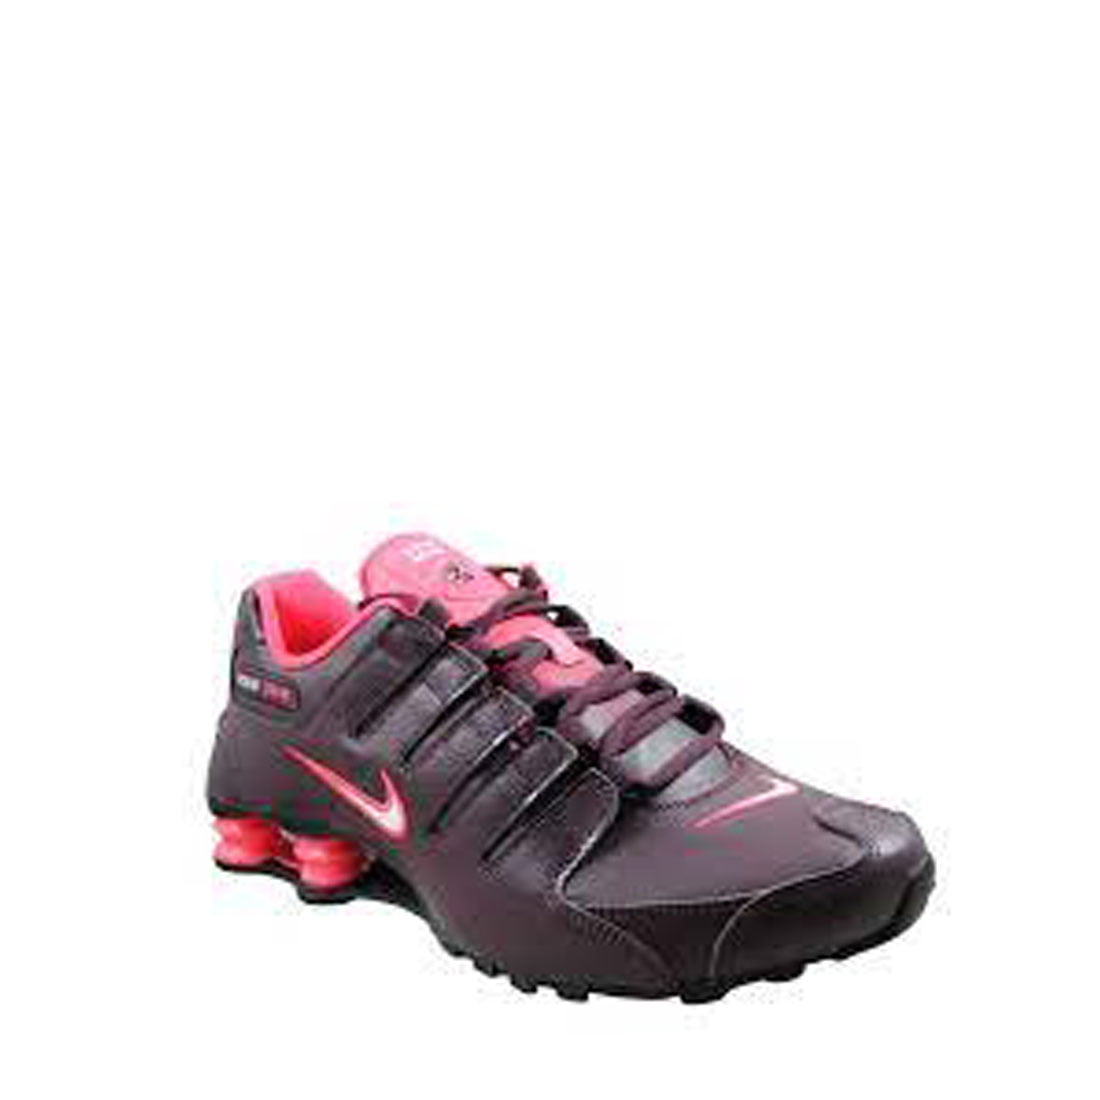 Nike Shox NZ EU Men/Adult shoe size 5 Casual 488312-602 Burgundy/ Hyper Punch -